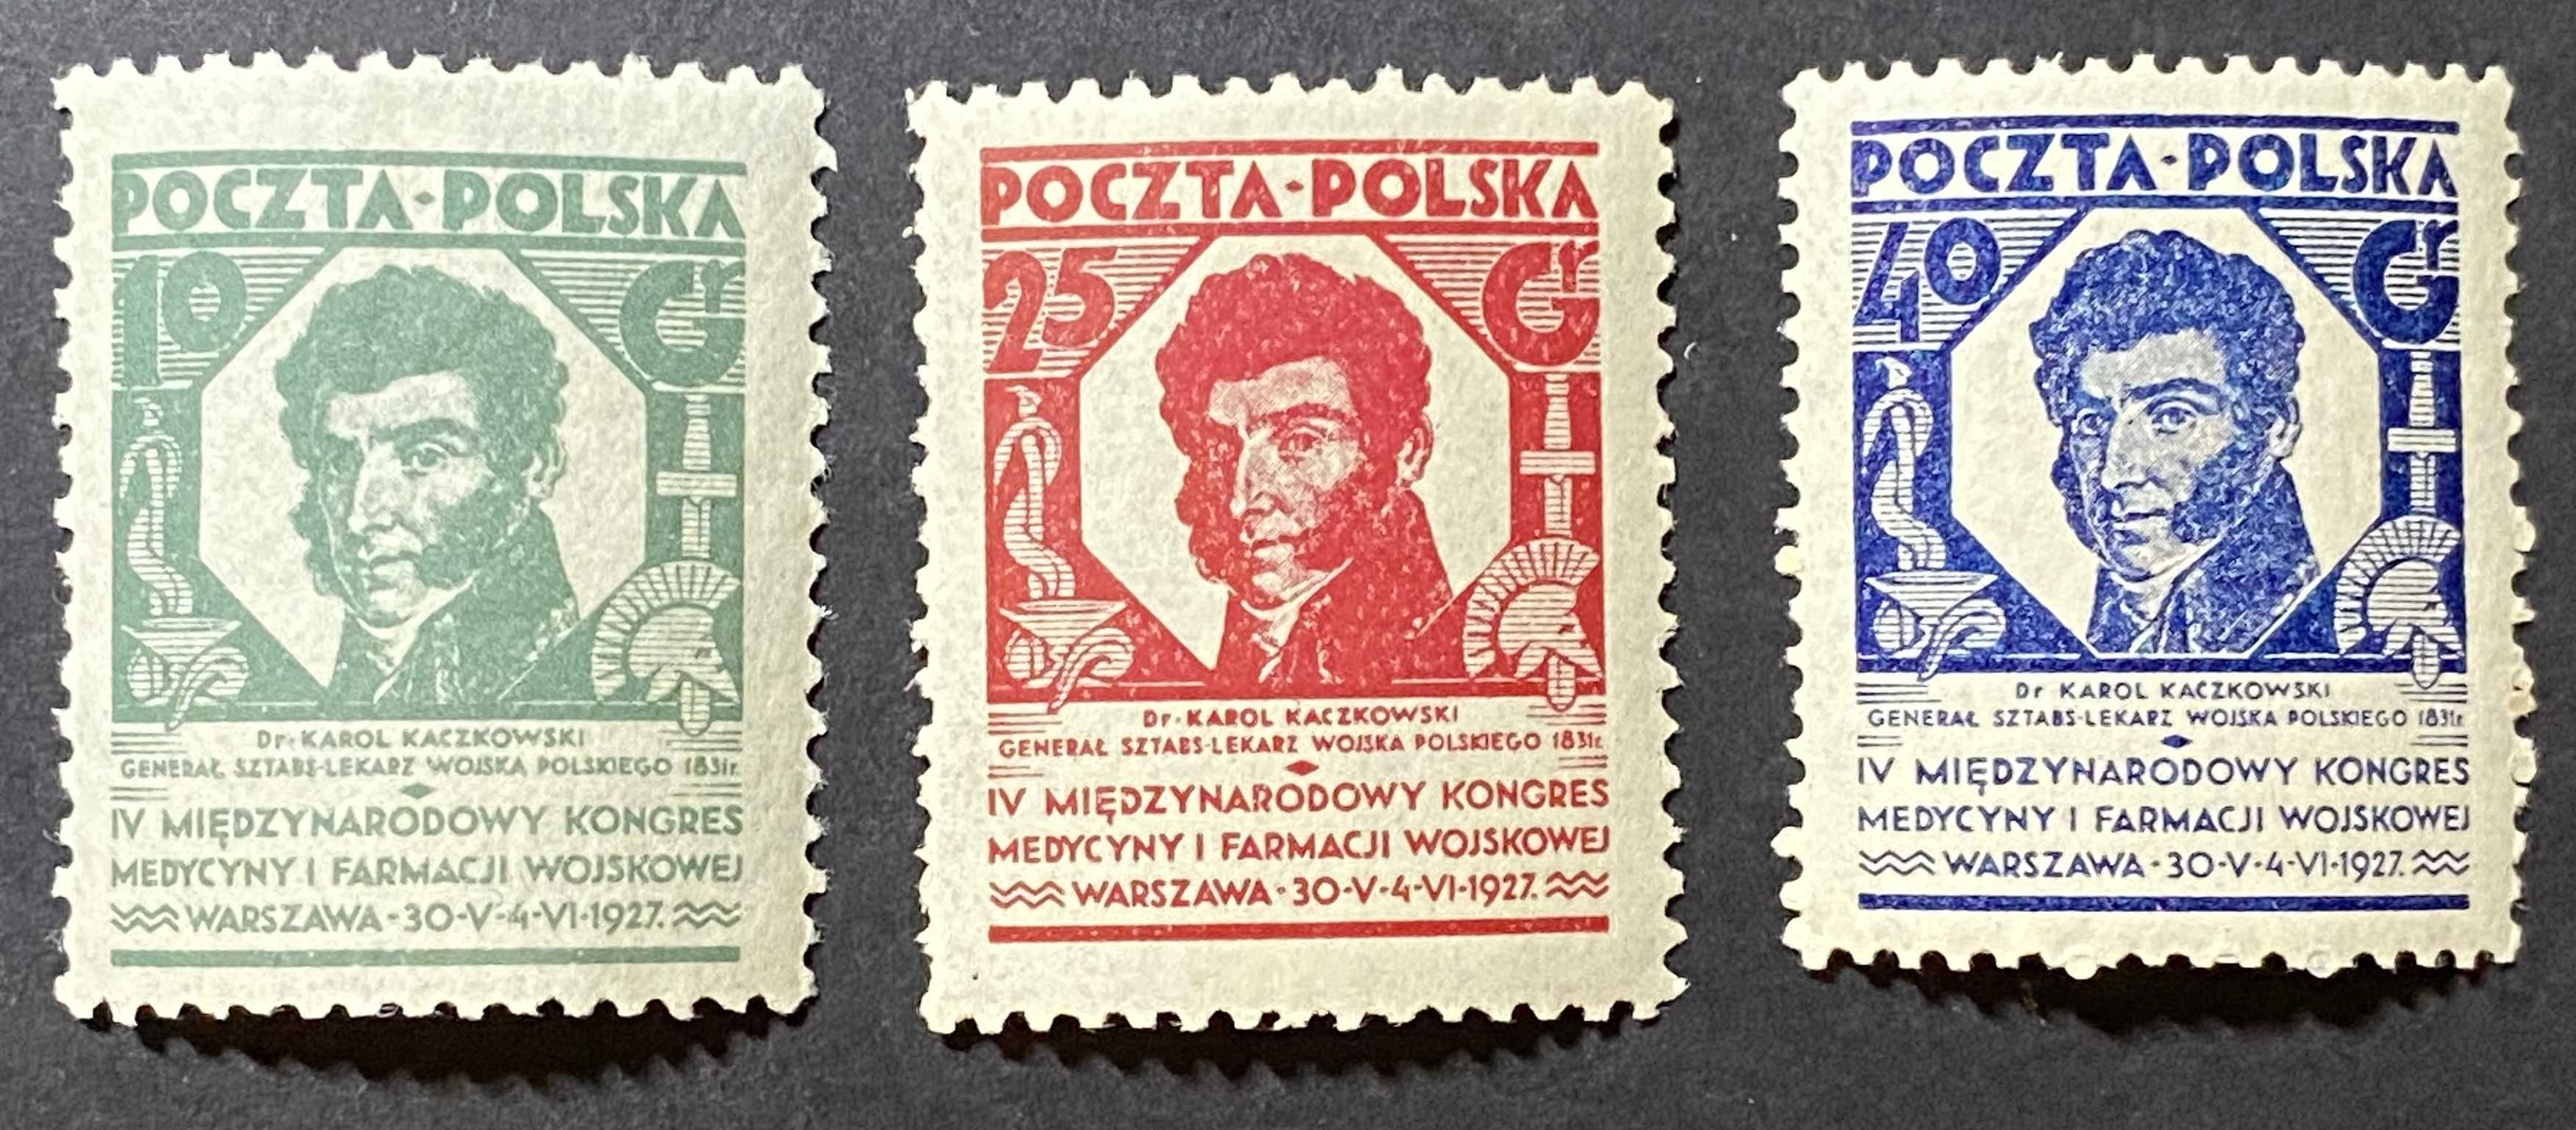 Znaczki Polska Fi 230 - 232 Kongres medycyny i farmacji 1927r